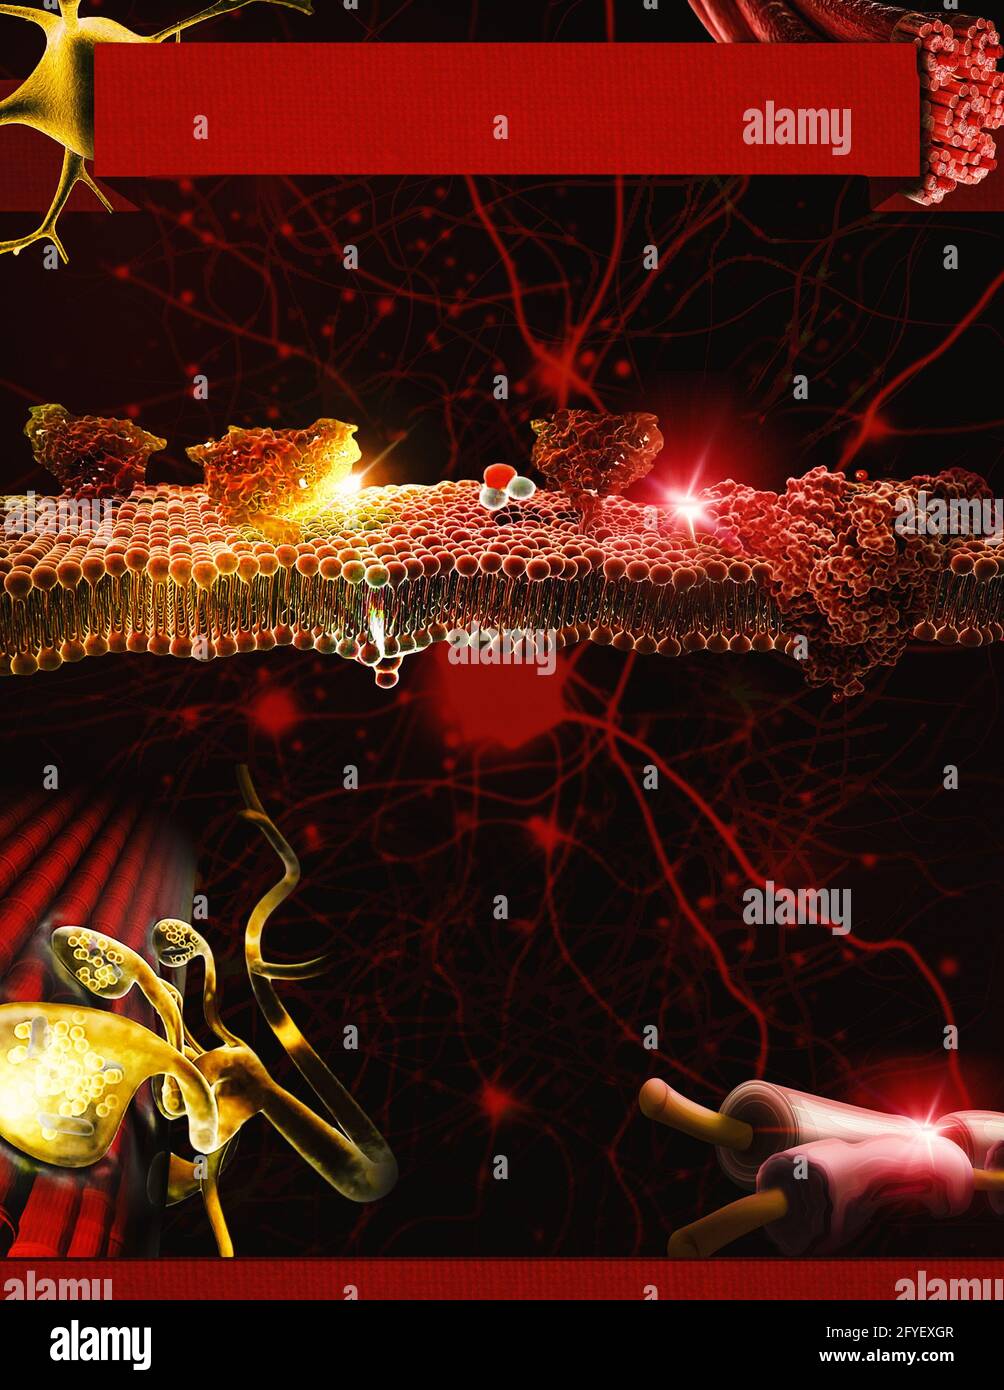 Eine Infografik-Vorlage, die sich auf die neuromuskuläre Kreuzung, Nerven, Muskeln, Zellen und Ionen des Körpers bezieht, mit einem dunkelroten und gelben Farbschema. Stockfoto